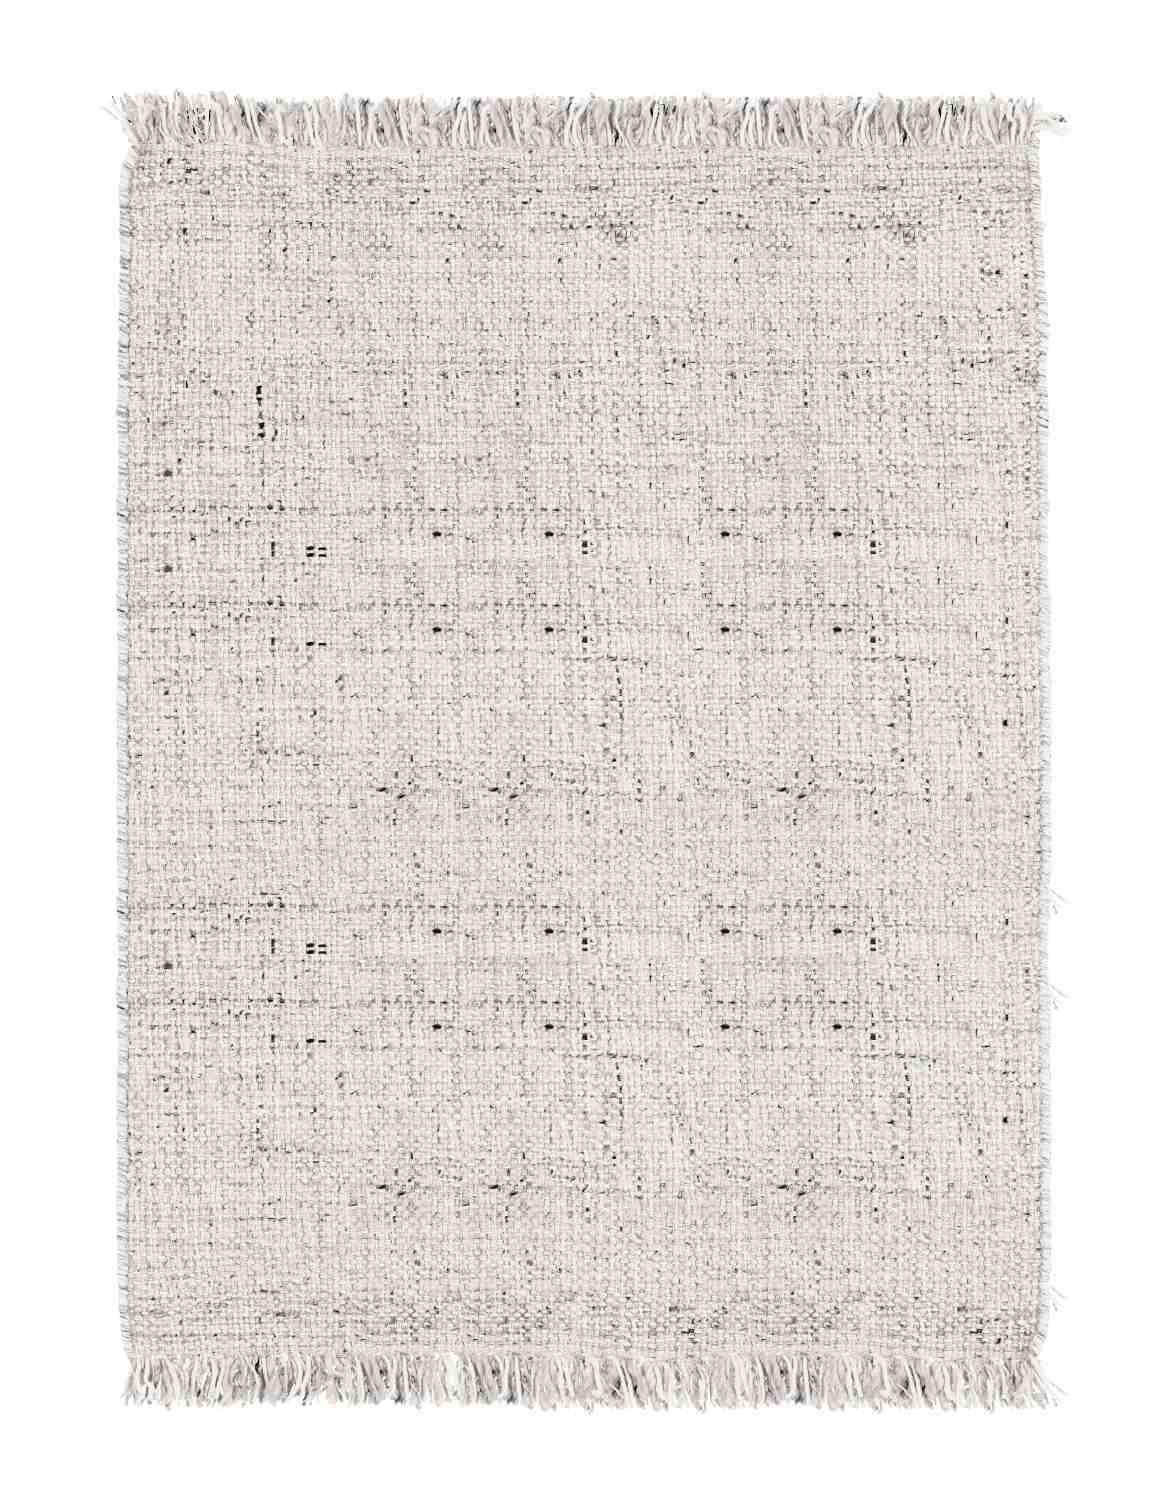 Der Teppich Senuri überzeugt mit seinem klassischen Design. Gefertigt wurde die Vorderseite aus 70% Polyester und 30% Wolle, die Rückseite ist aus Baumwolle. Der Teppich besitzt eine Beige Farbton und die Maße von 140x200 cm.